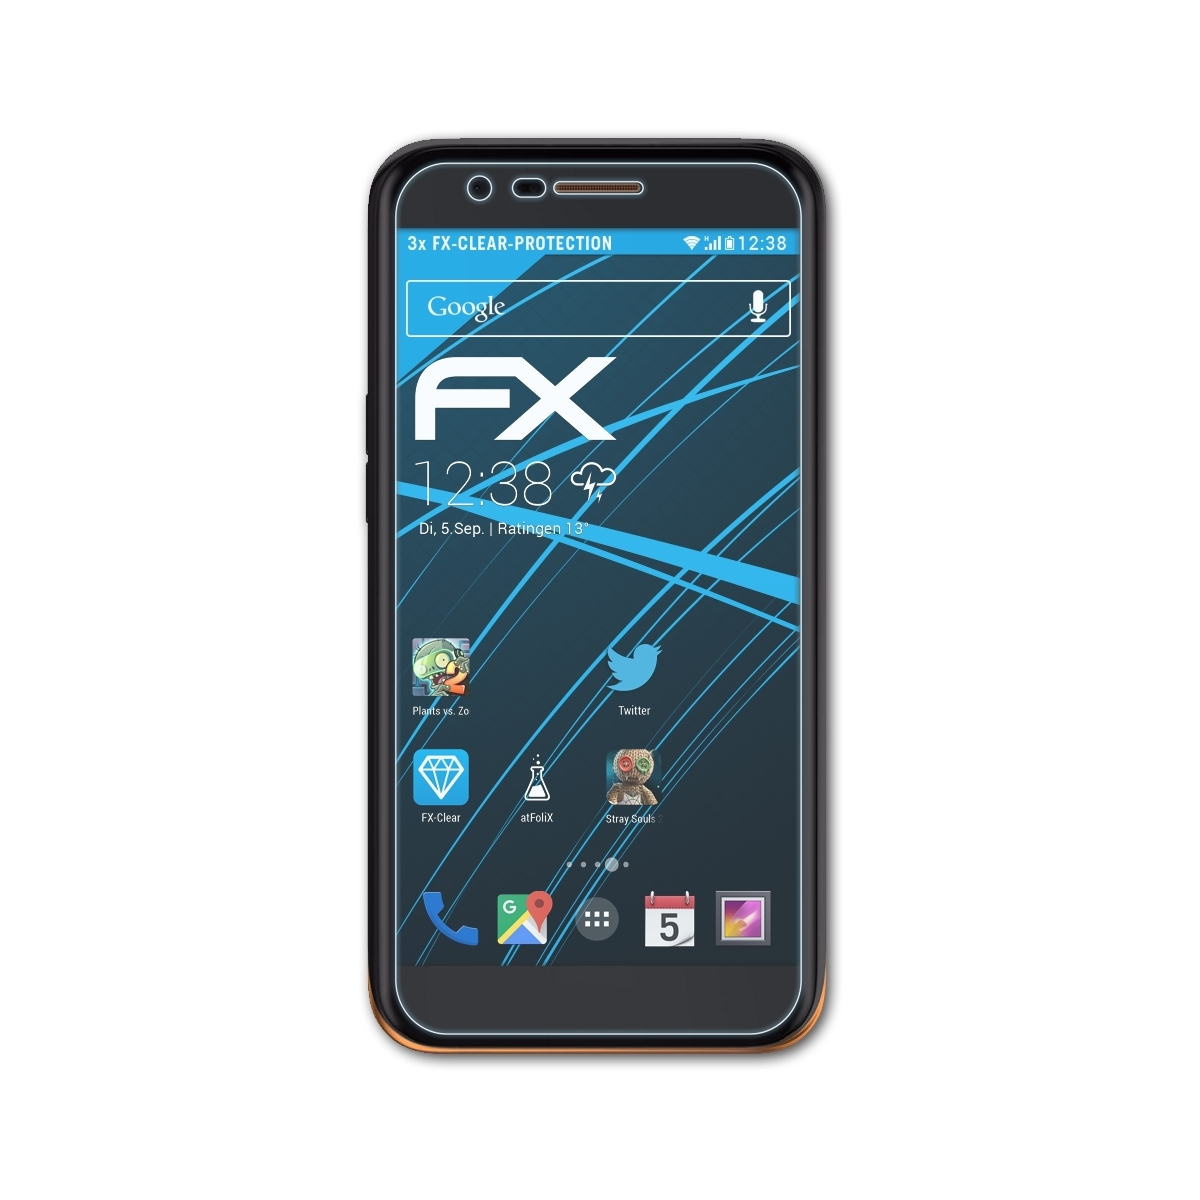 LG FX-Clear Displayschutz(für V) ATFOLIX K20 3x